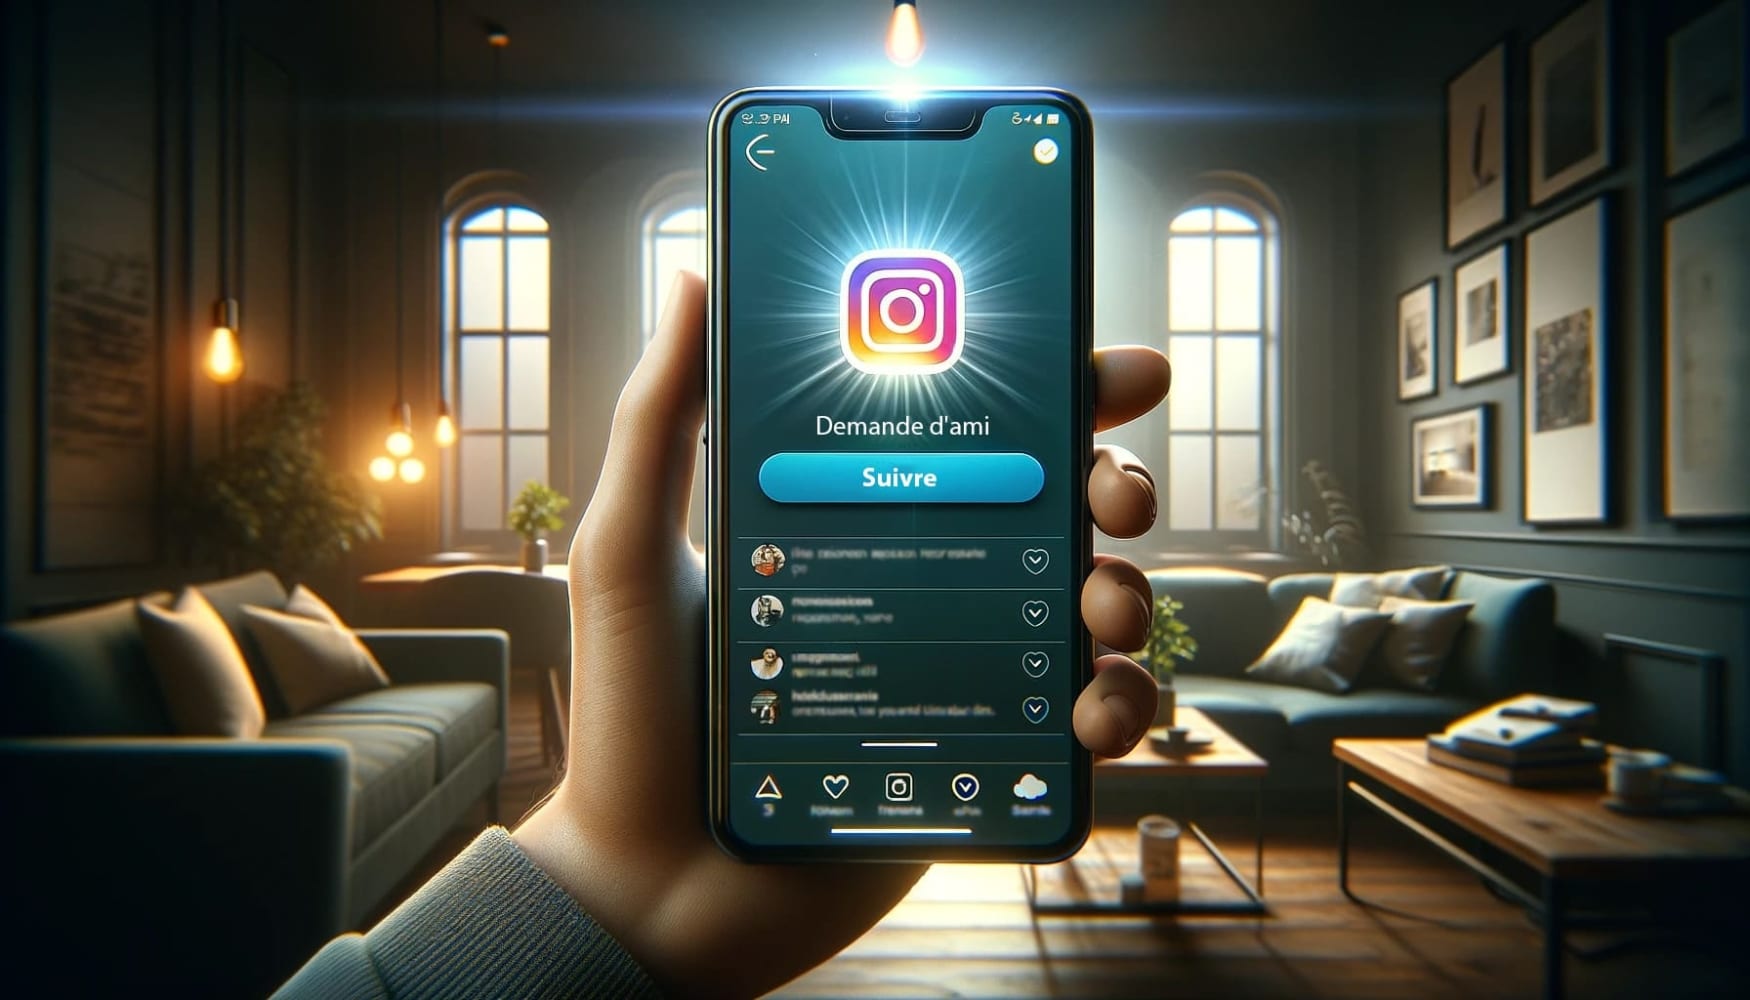 L'illustration représente une main tenant un smartphone avec l'interface d'Instagram à l'écran. L'écran affiche une notification de demande d'amitié avec un bouton "Suivre" clair et lumineux.